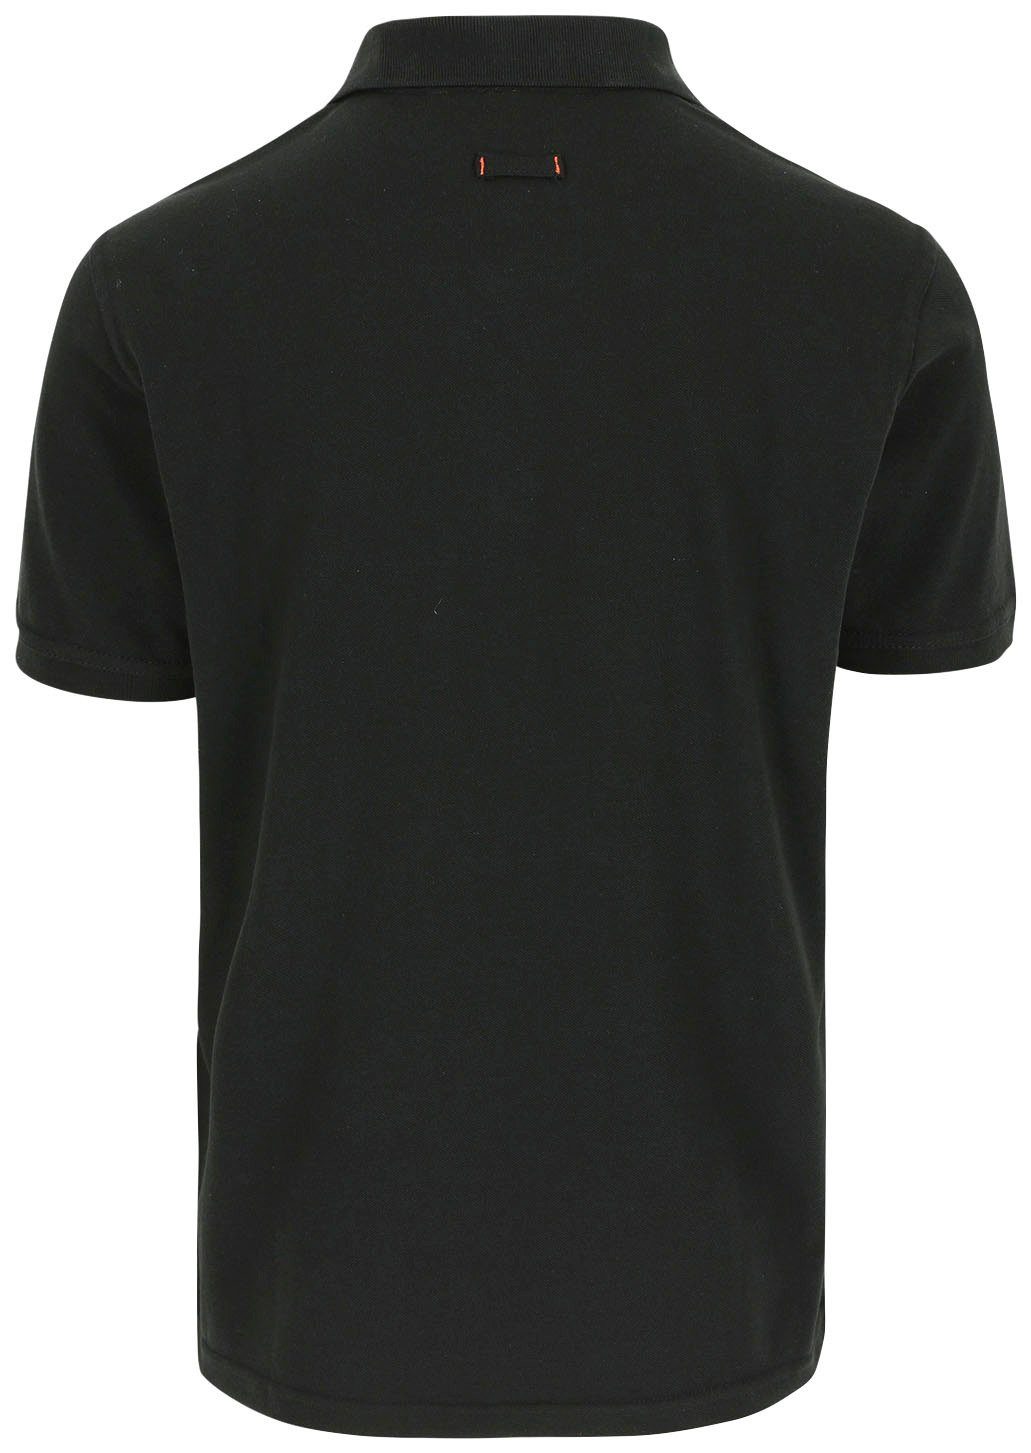 Herock Poloshirt Leo Polohemd Kurzärmlig Bündchen, verschiedene 1 und Rippstrick-Kragen schwarz Farben Brusttasche